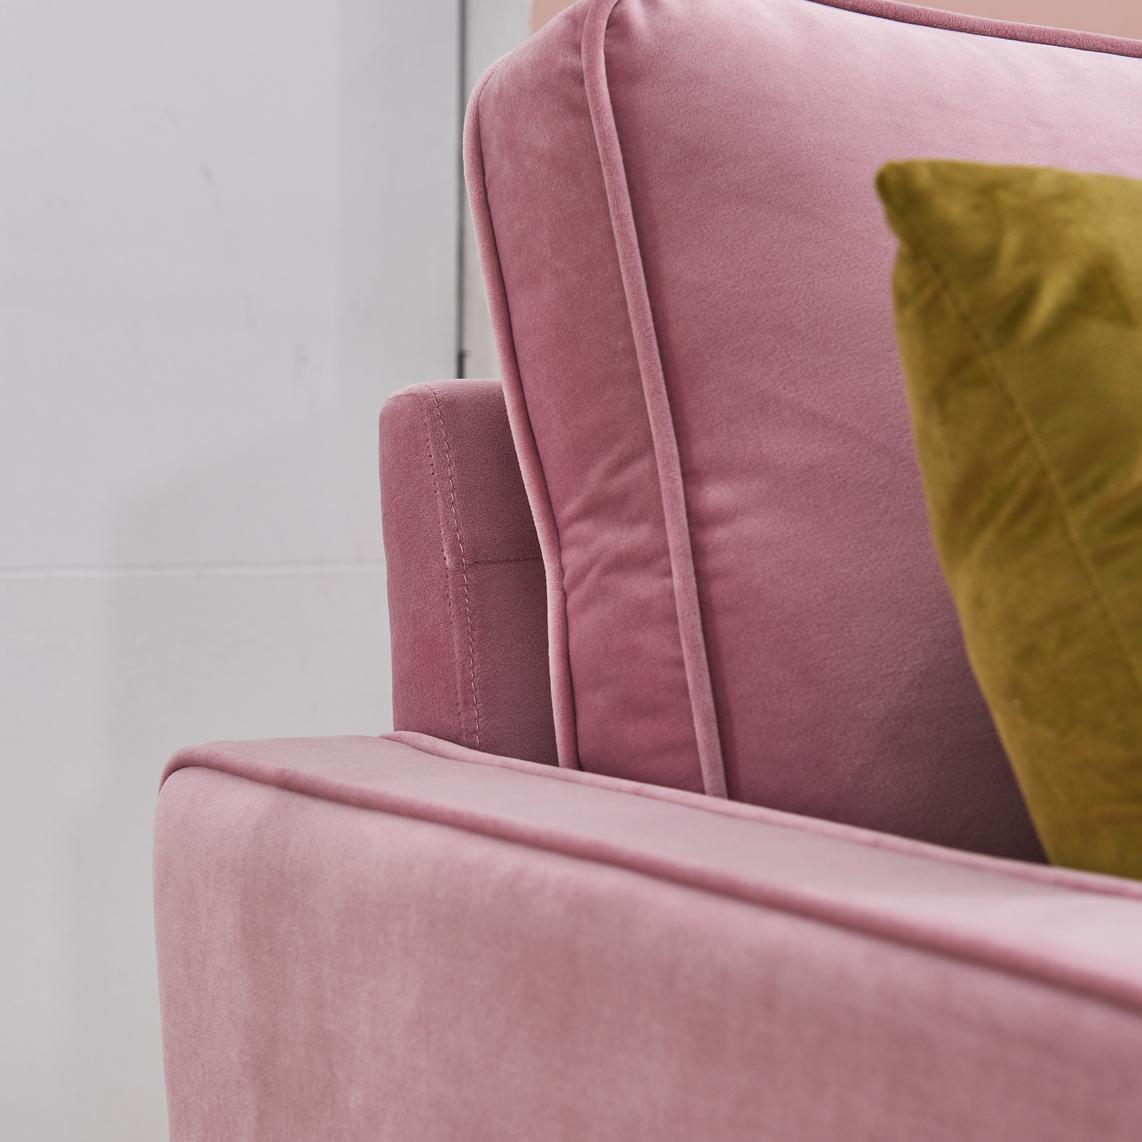 Modern Velvet fabric sofa 71" - Pink